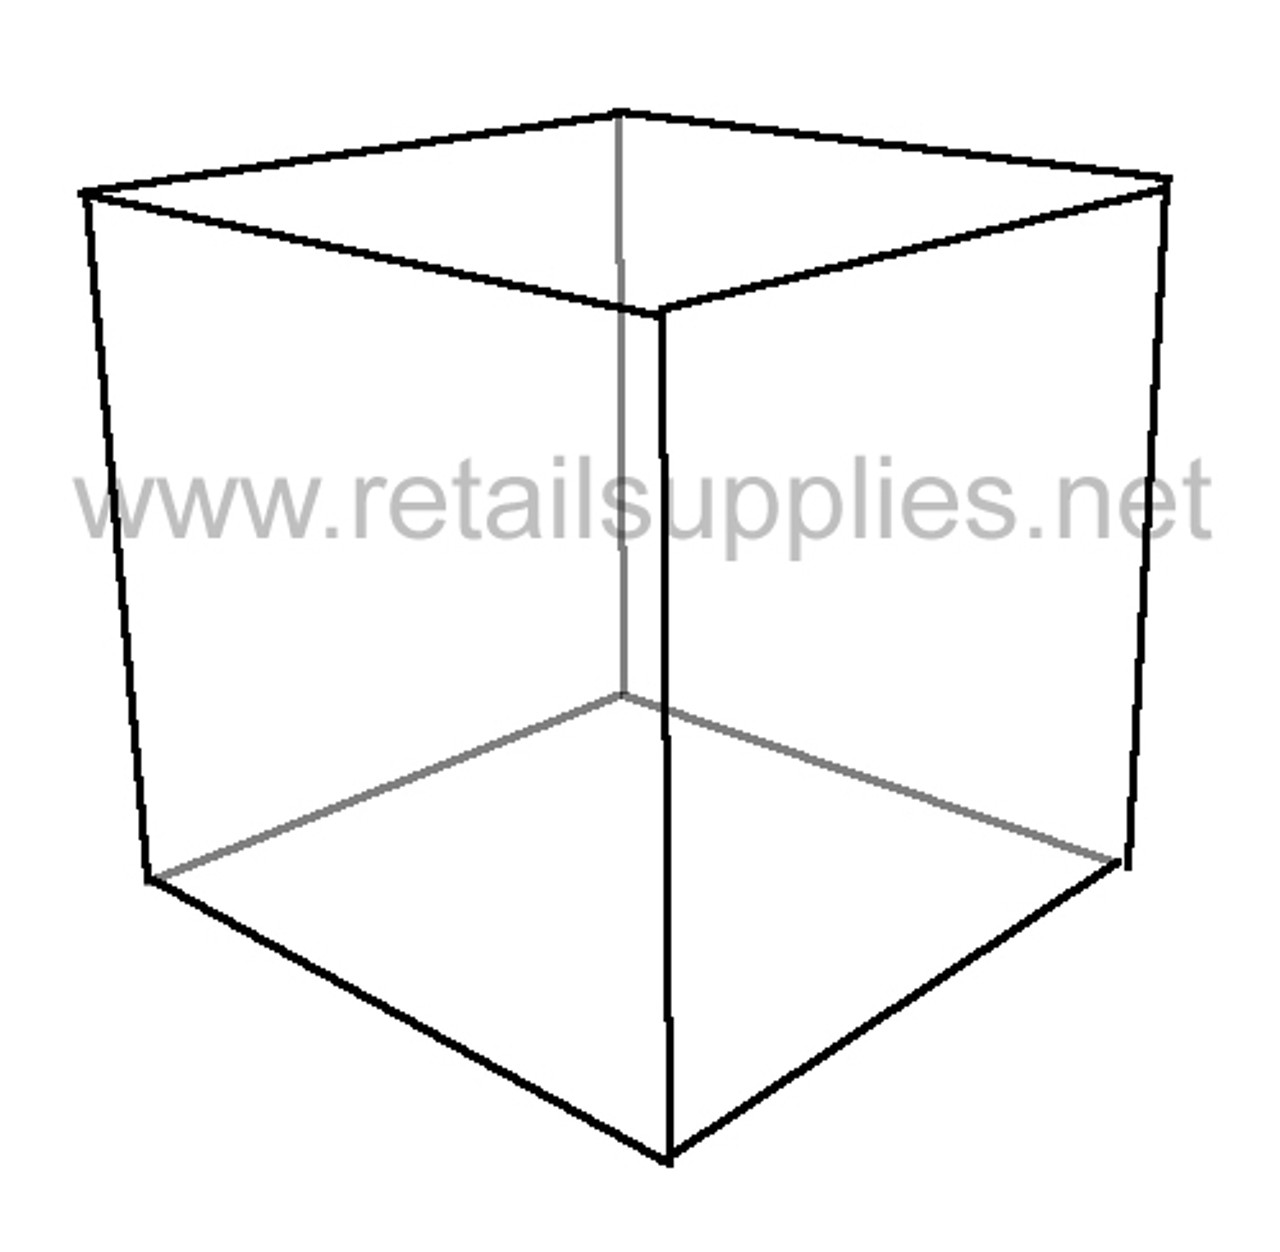 6"x6"x6" Acrylic Cube Display